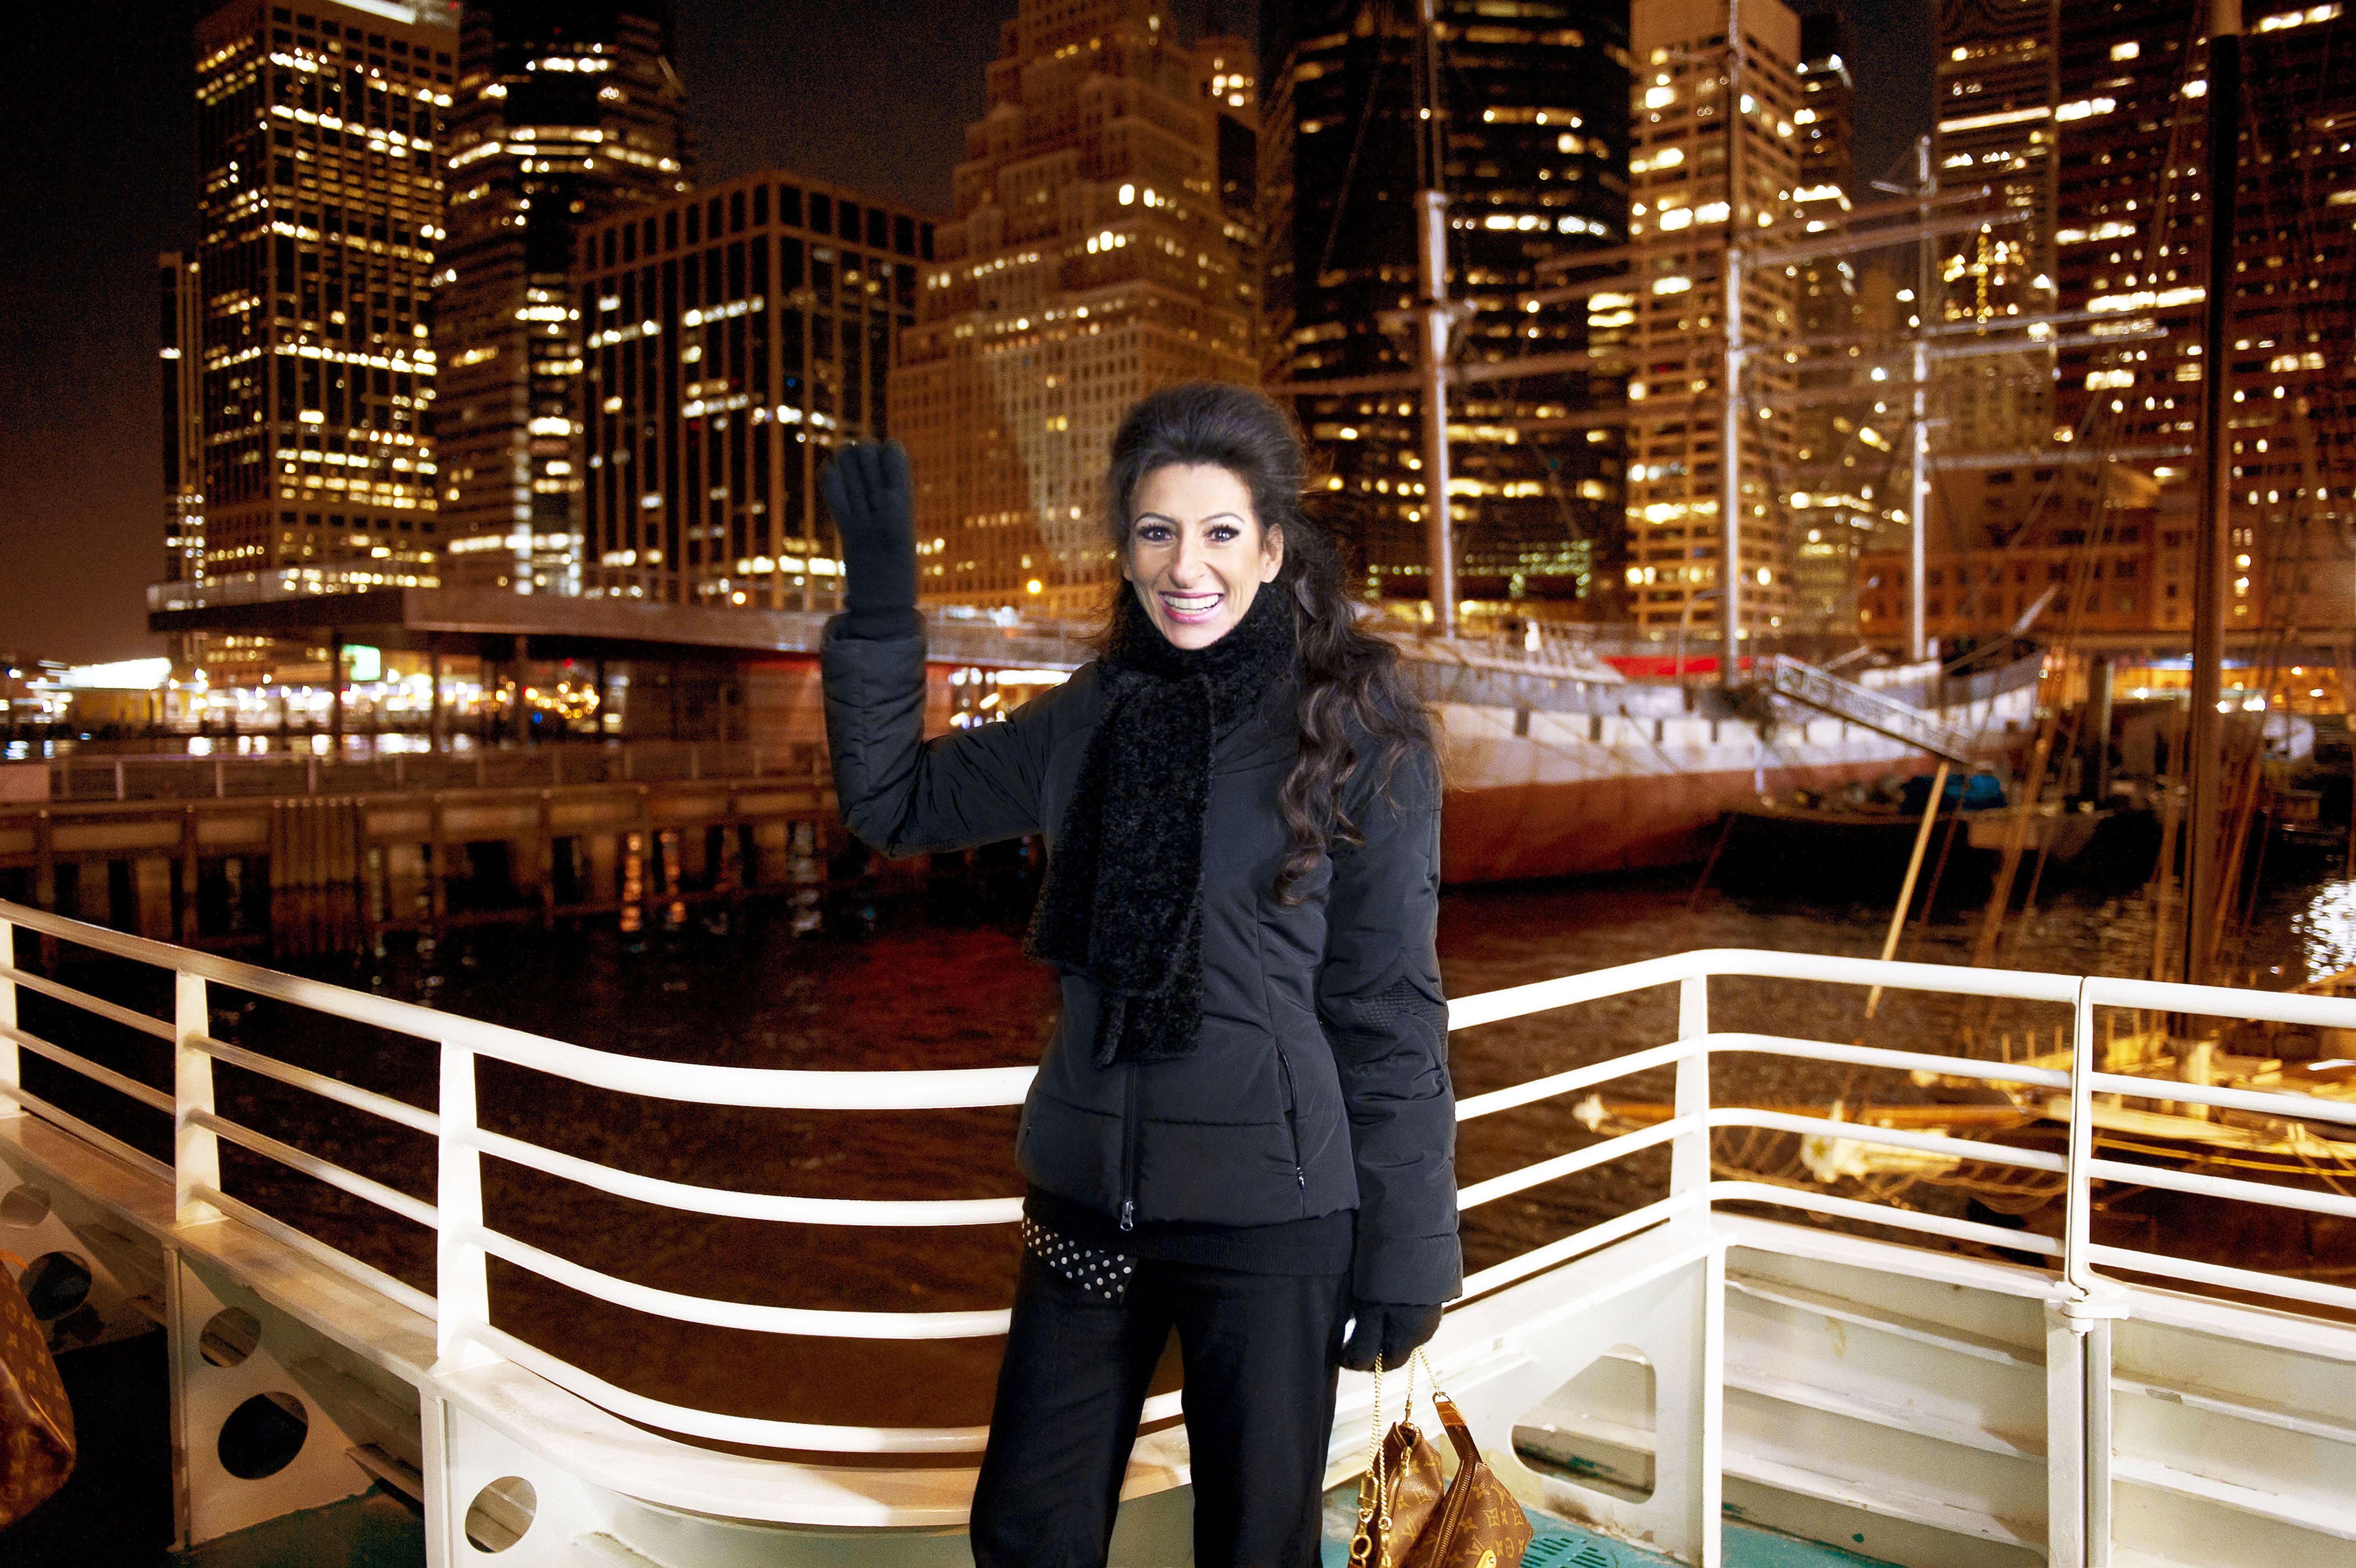 Lucia Aliberti⚘Ship⚘New York⚘:http://www.luciaaliberti.it #luciaaliberti #newyork #ship⚘:http://www.luciaaliberti.it #luciaaliberti #ship #newyork